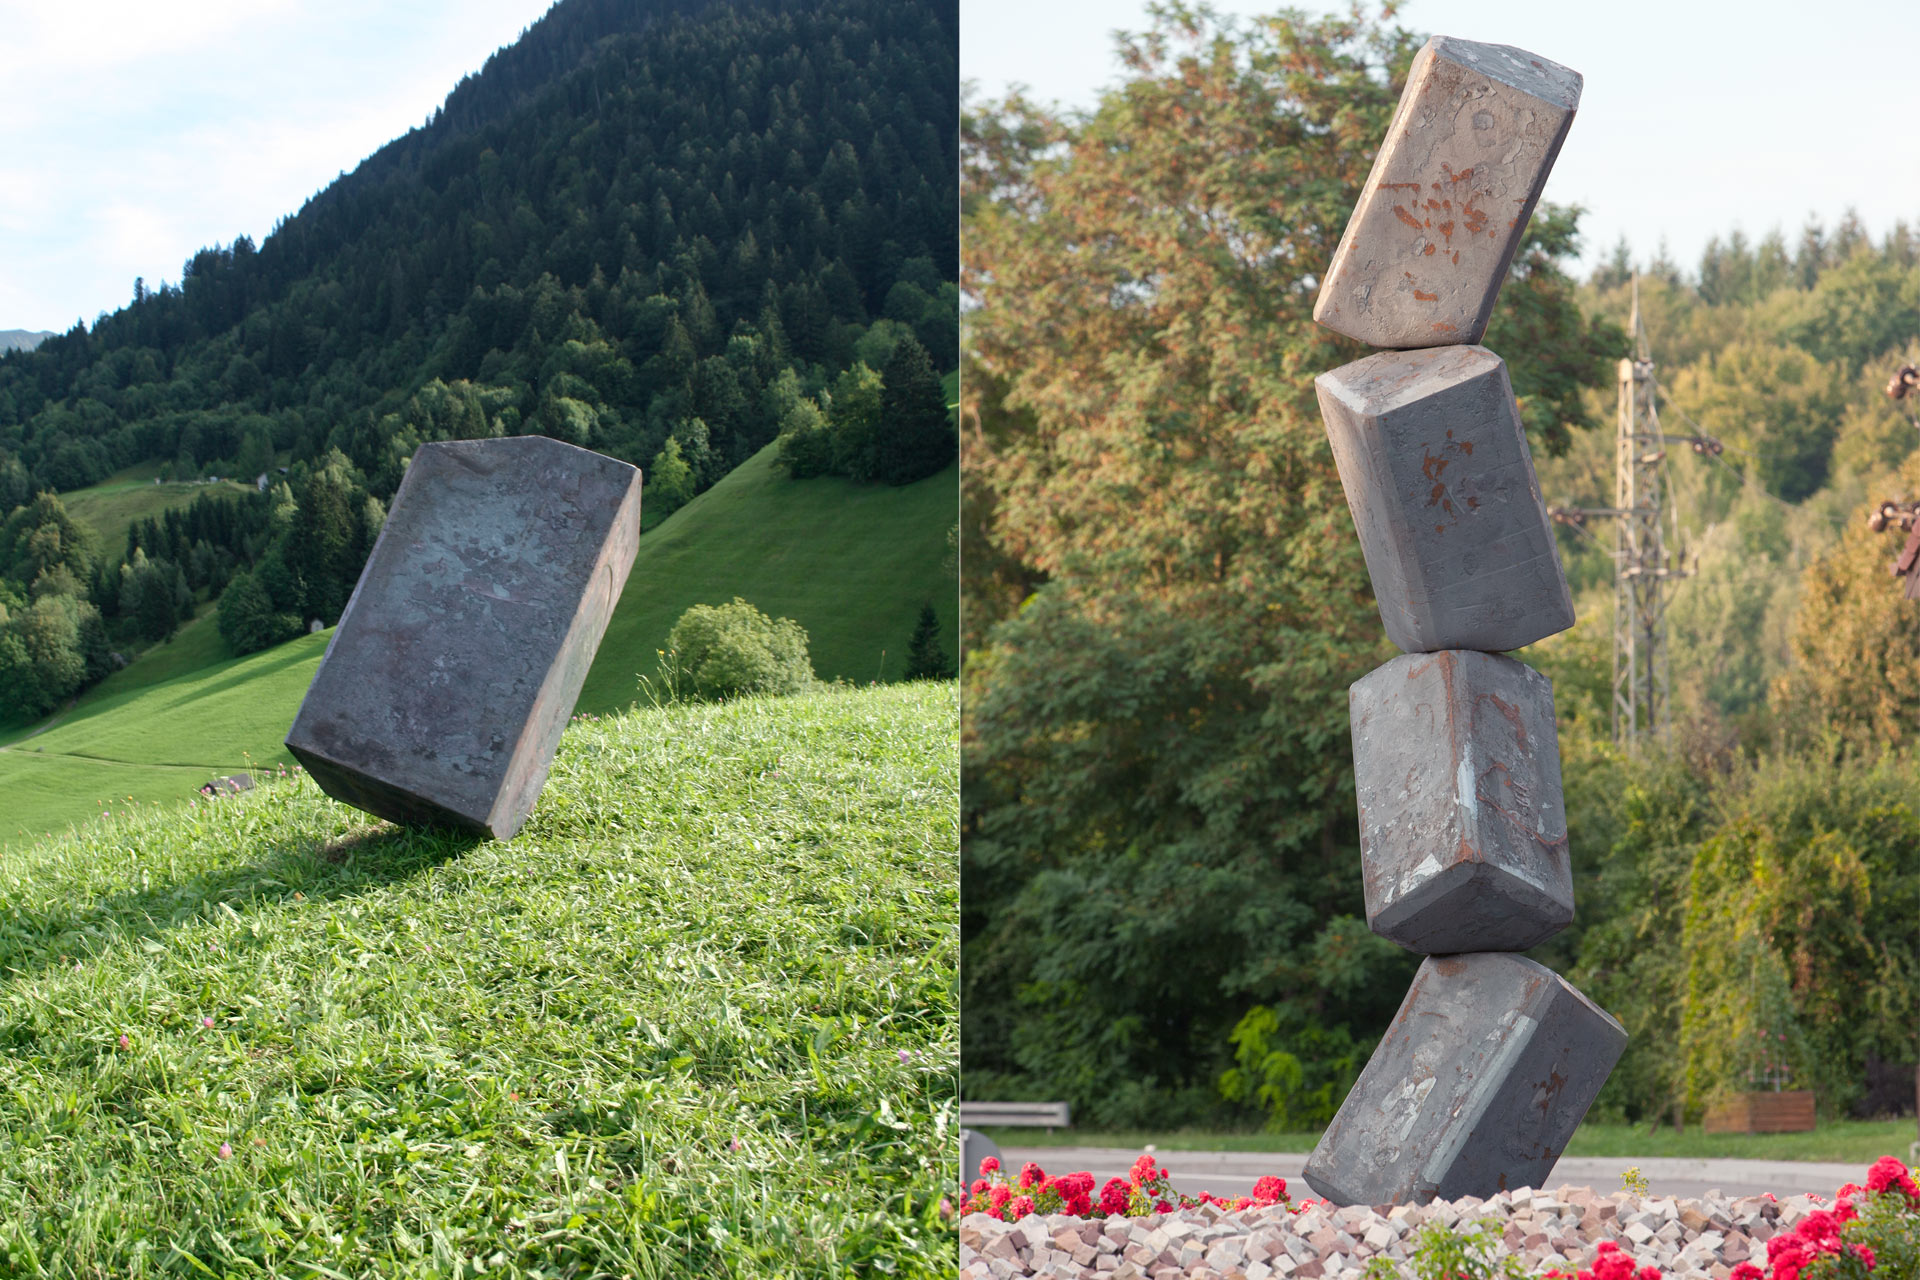 Polyhedron Gurtis (left) / Polyhedron in Pfinztal-Kleinsteinbach (right) -Forged art from Markus Strieder